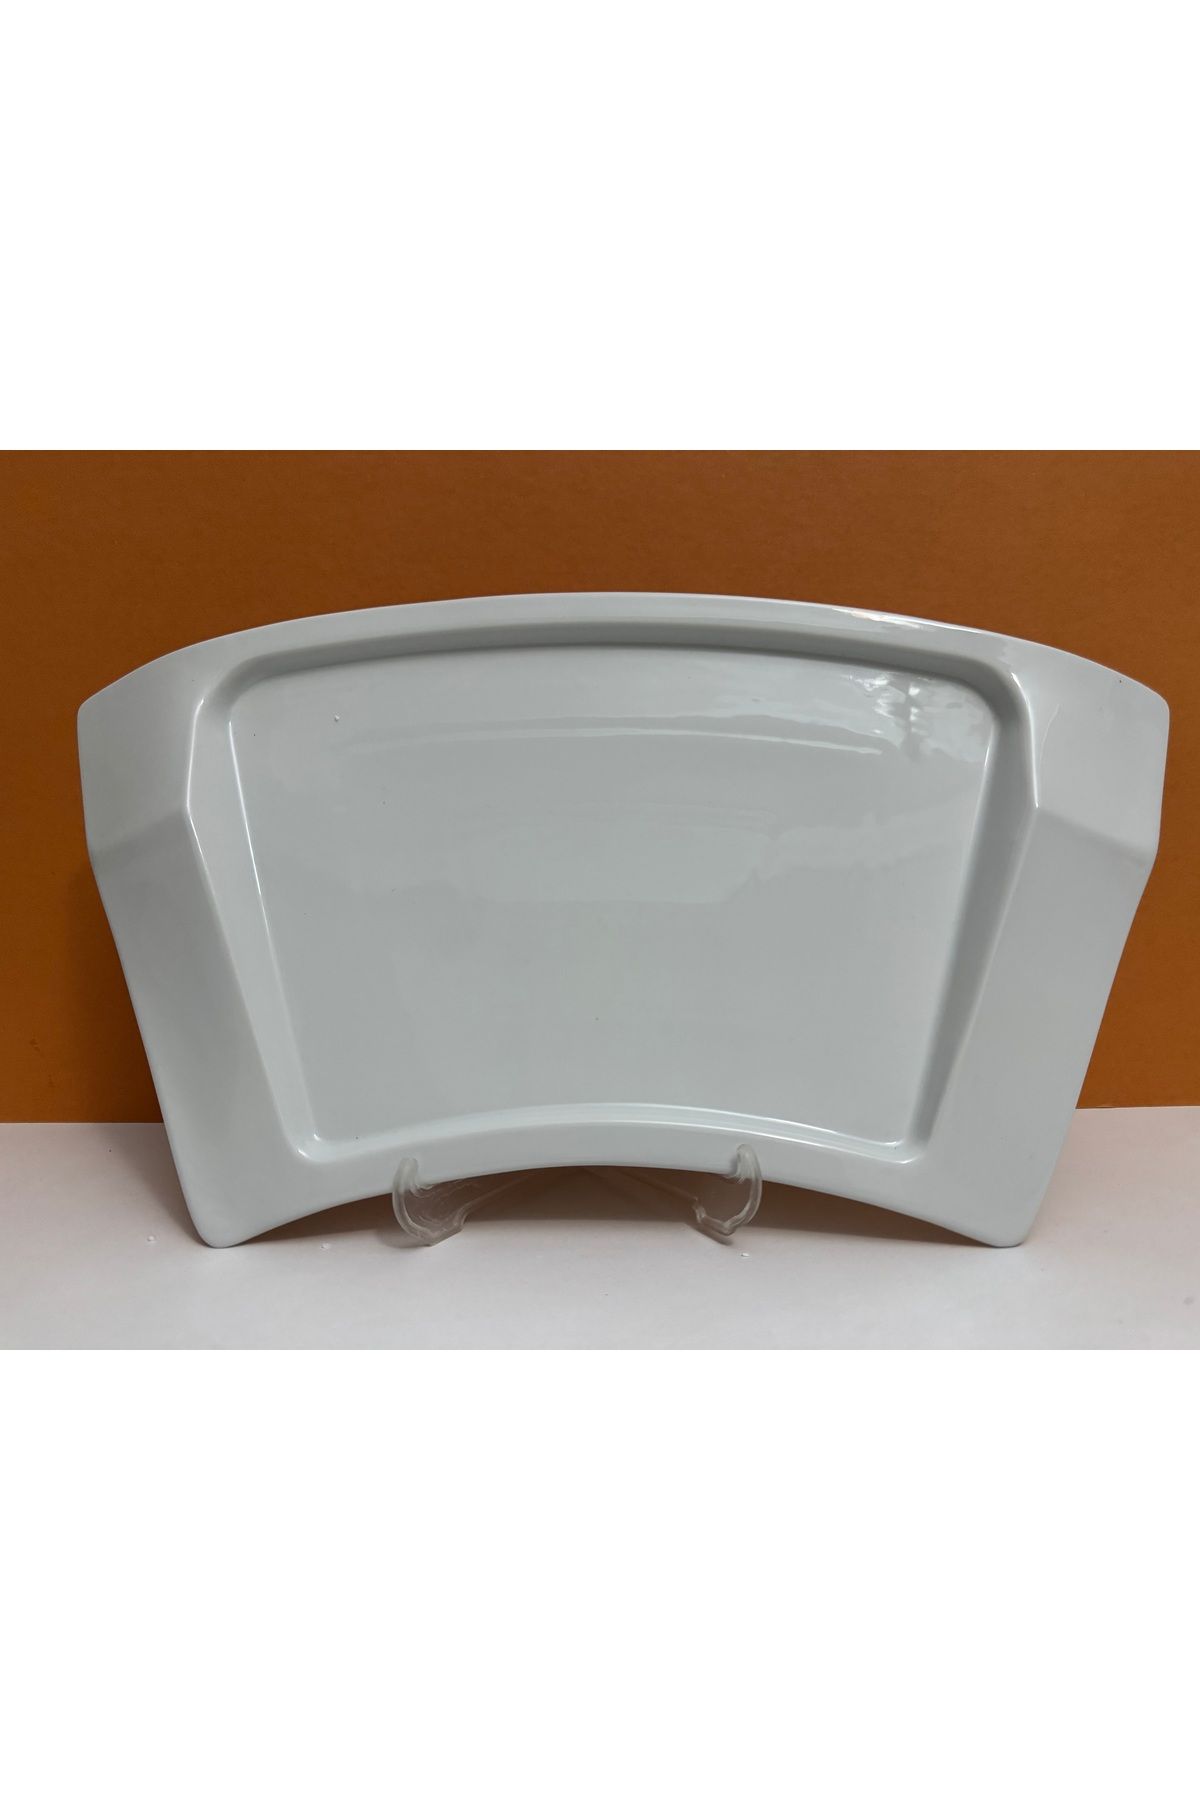 Kütahya Porselen Beyaz Tablet Model Büyük Boy Kayık Tabak 38*21 cm